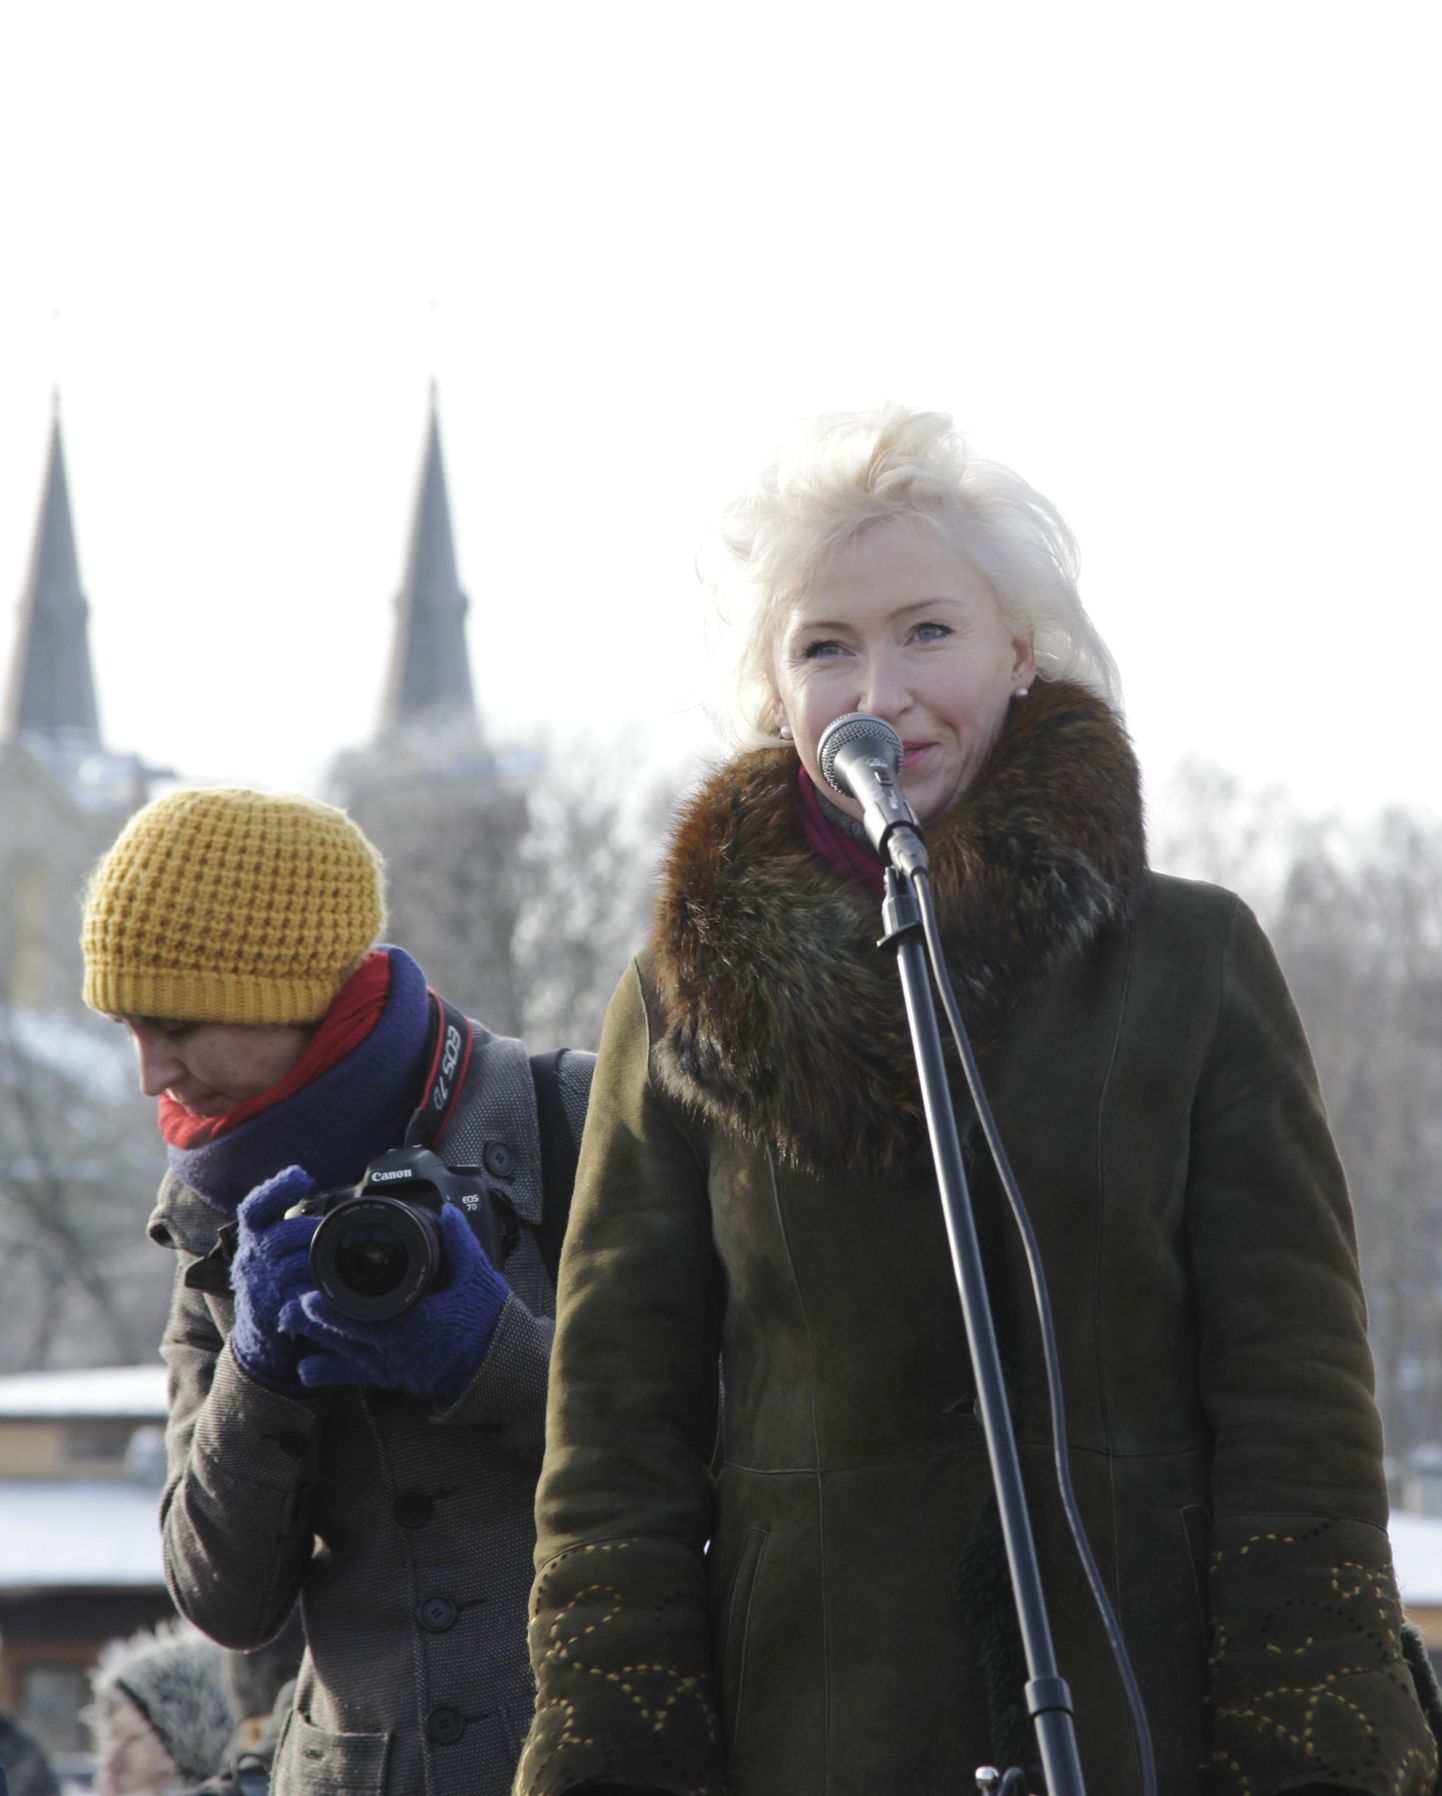 Tallinnas Vabaduse väljakul korraldas MTÜ Eesti Interneti kogukond ACTA lepingu vastase miitingu. Kristiina Ojuland kõnet pidamas.